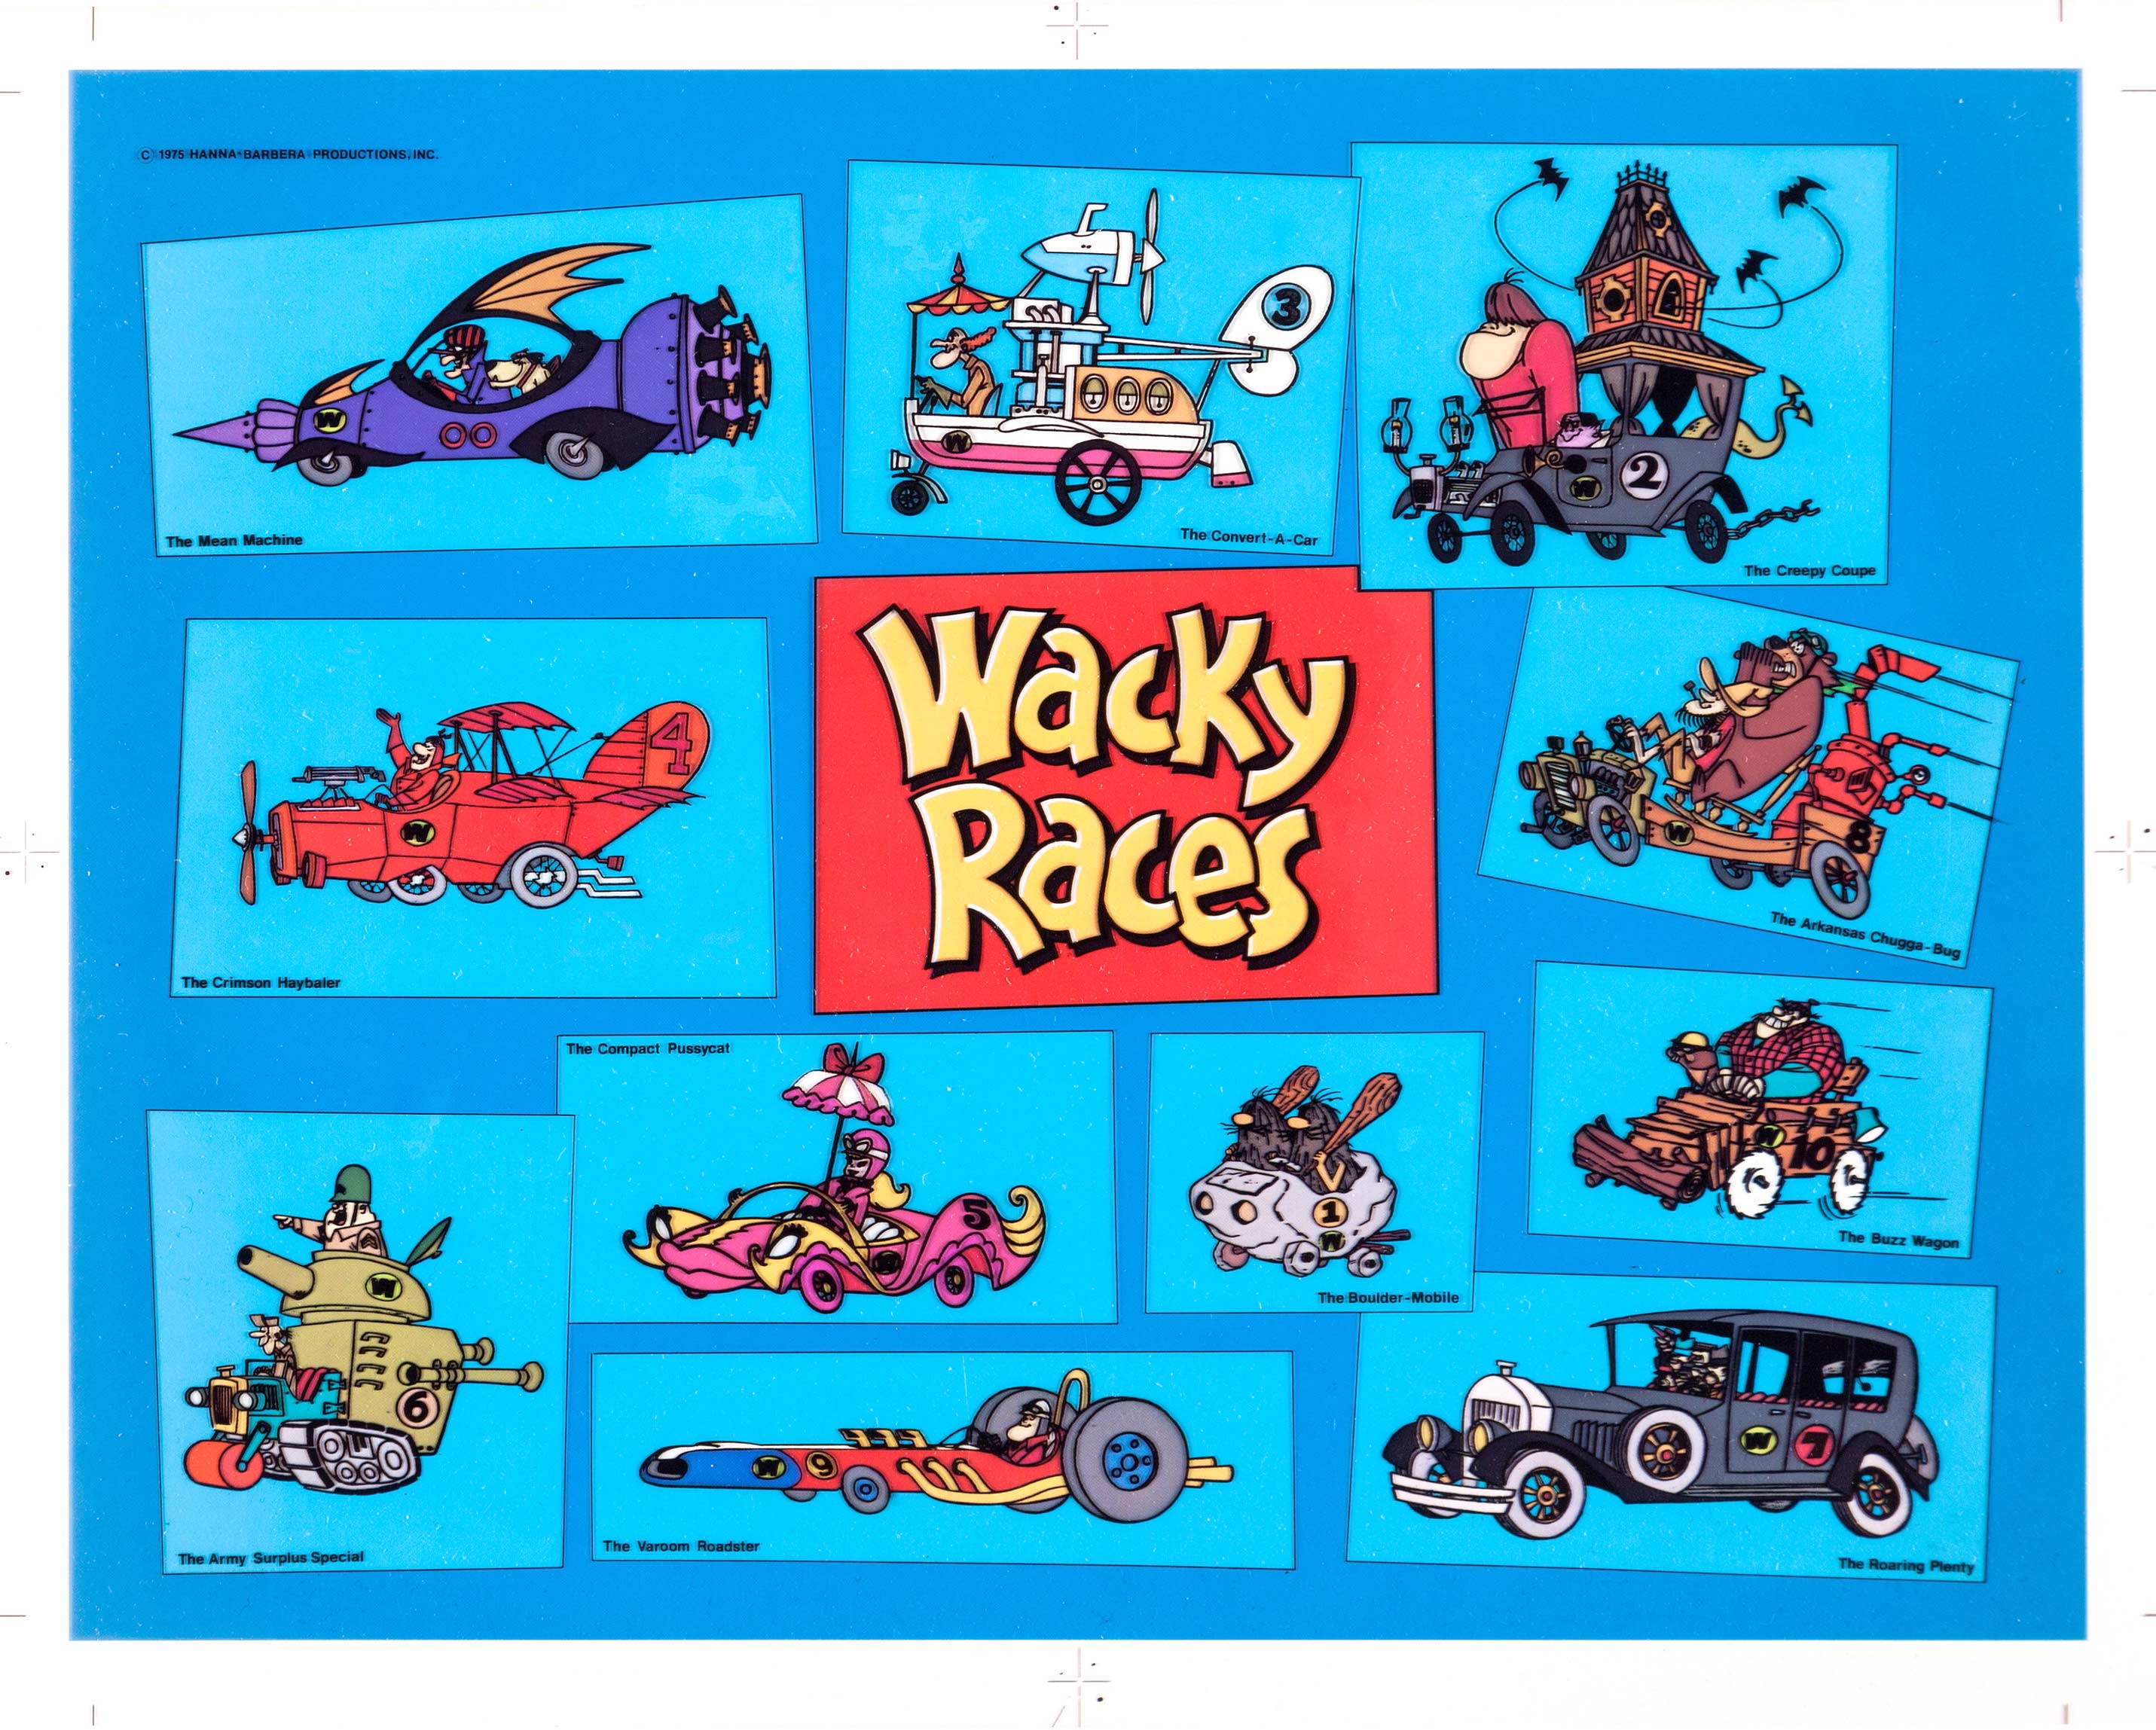 wacky-races-model2.jpg